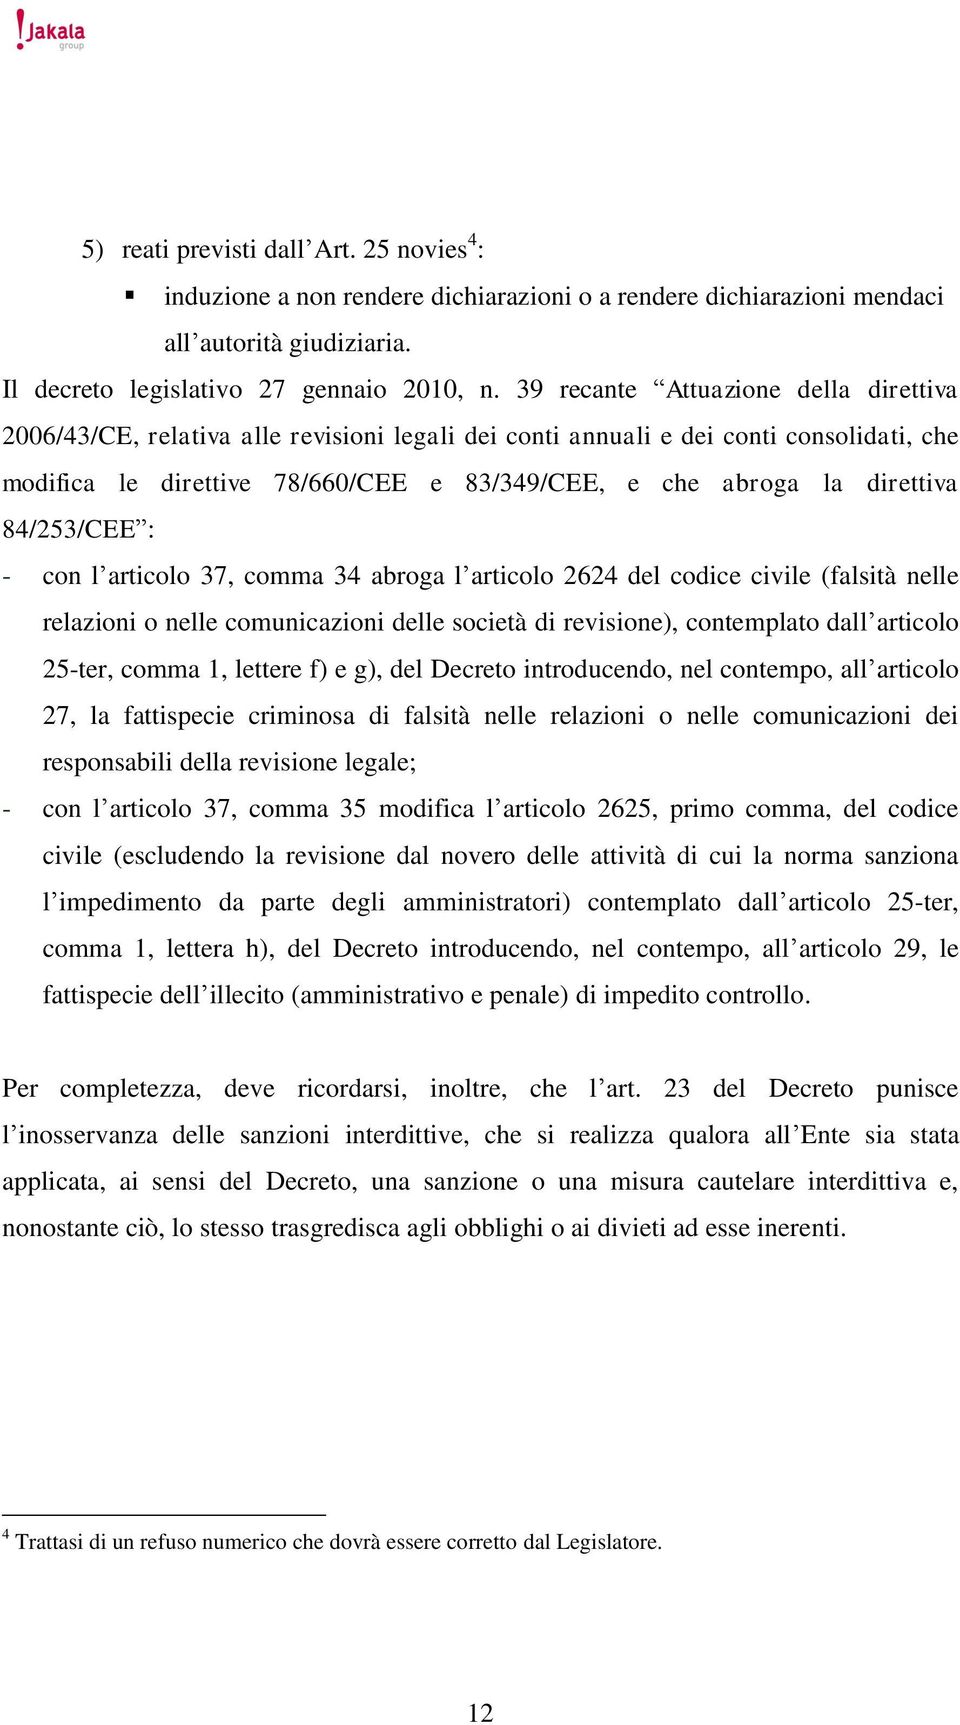 direttiva 84/253/CEE : - con l articolo 37, comma 34 abroga l articolo 2624 del codice civile (falsità nelle relazioni o nelle comunicazioni delle società di revisione), contemplato dall articolo